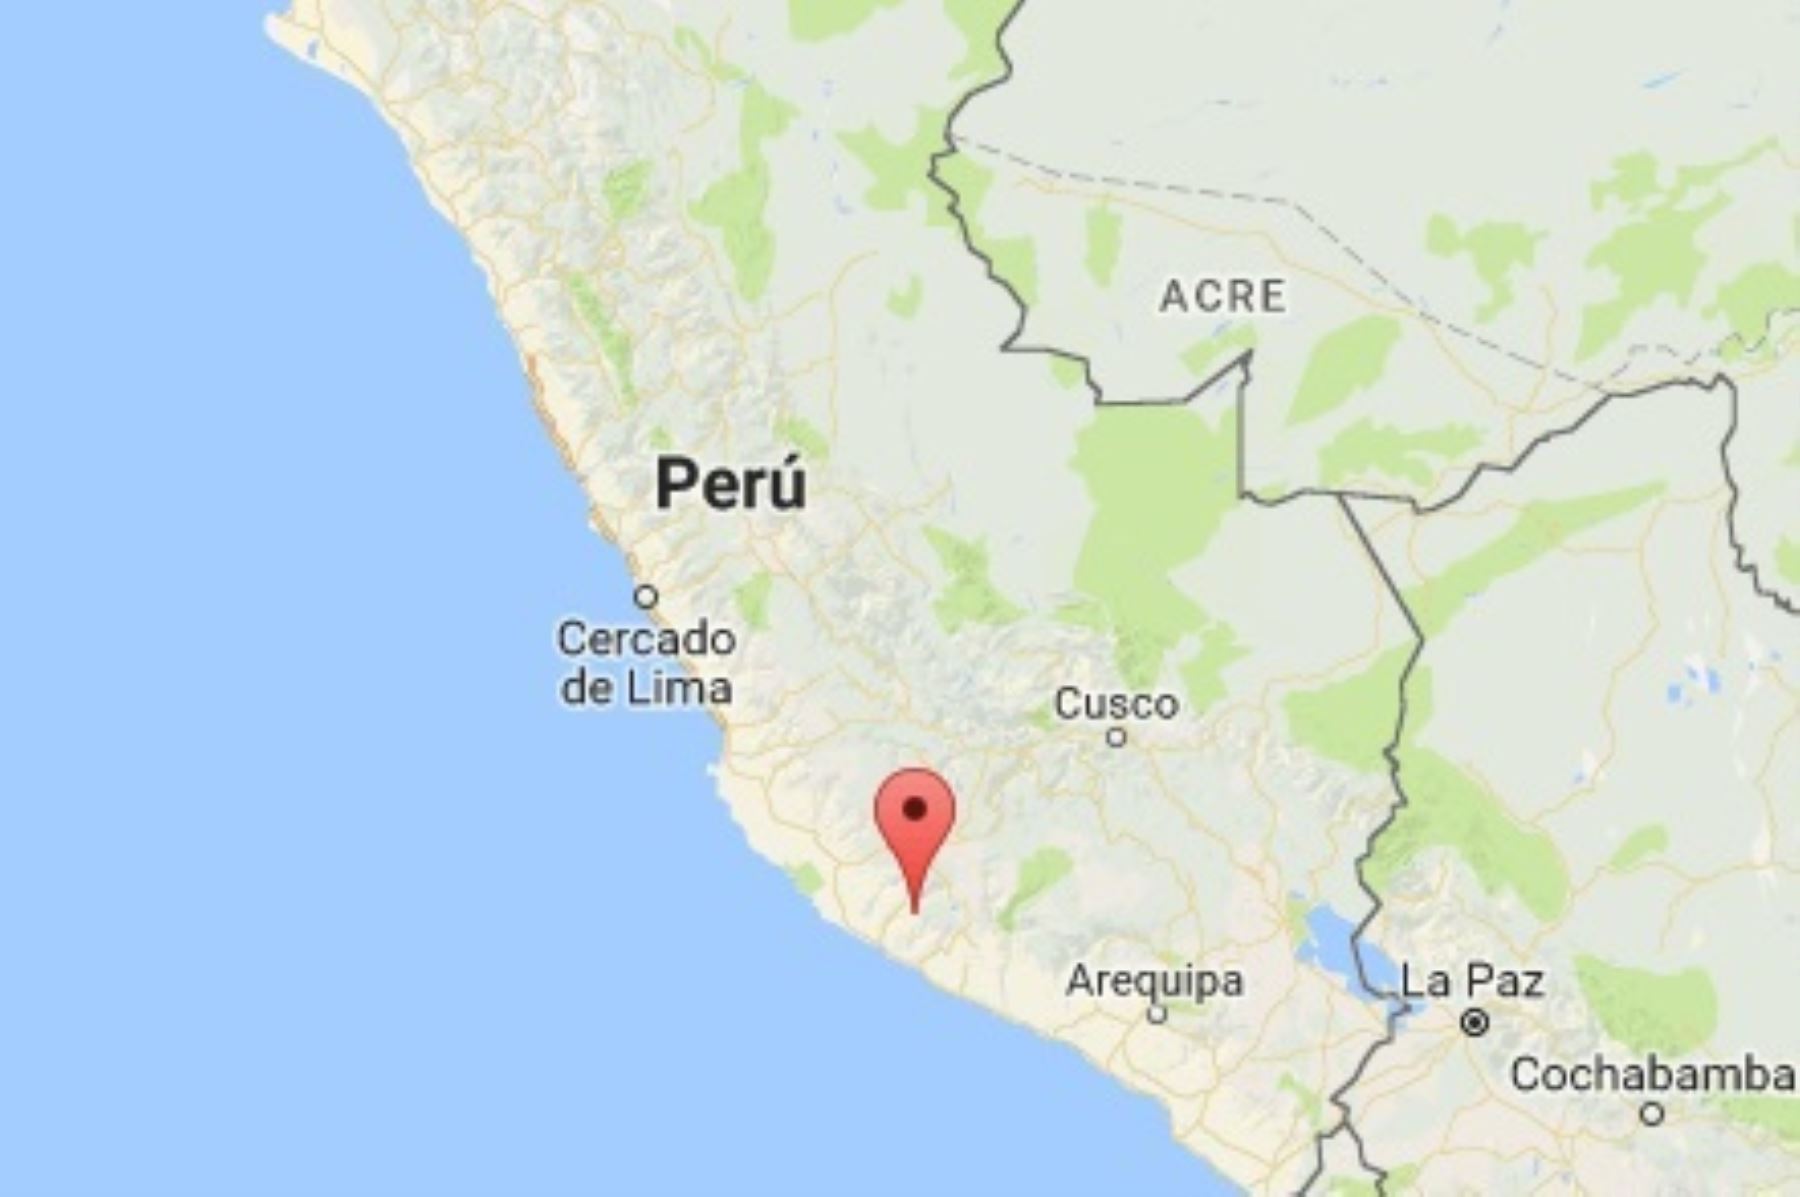 Un sismo de magnitud 4.6 se registró a las 09:31 horas de hoy en la región Arequipa, con una profundidad de 25 kilómetros, informó el Instituto Geofísico del Perú (IGP). ANDINA/Difusión